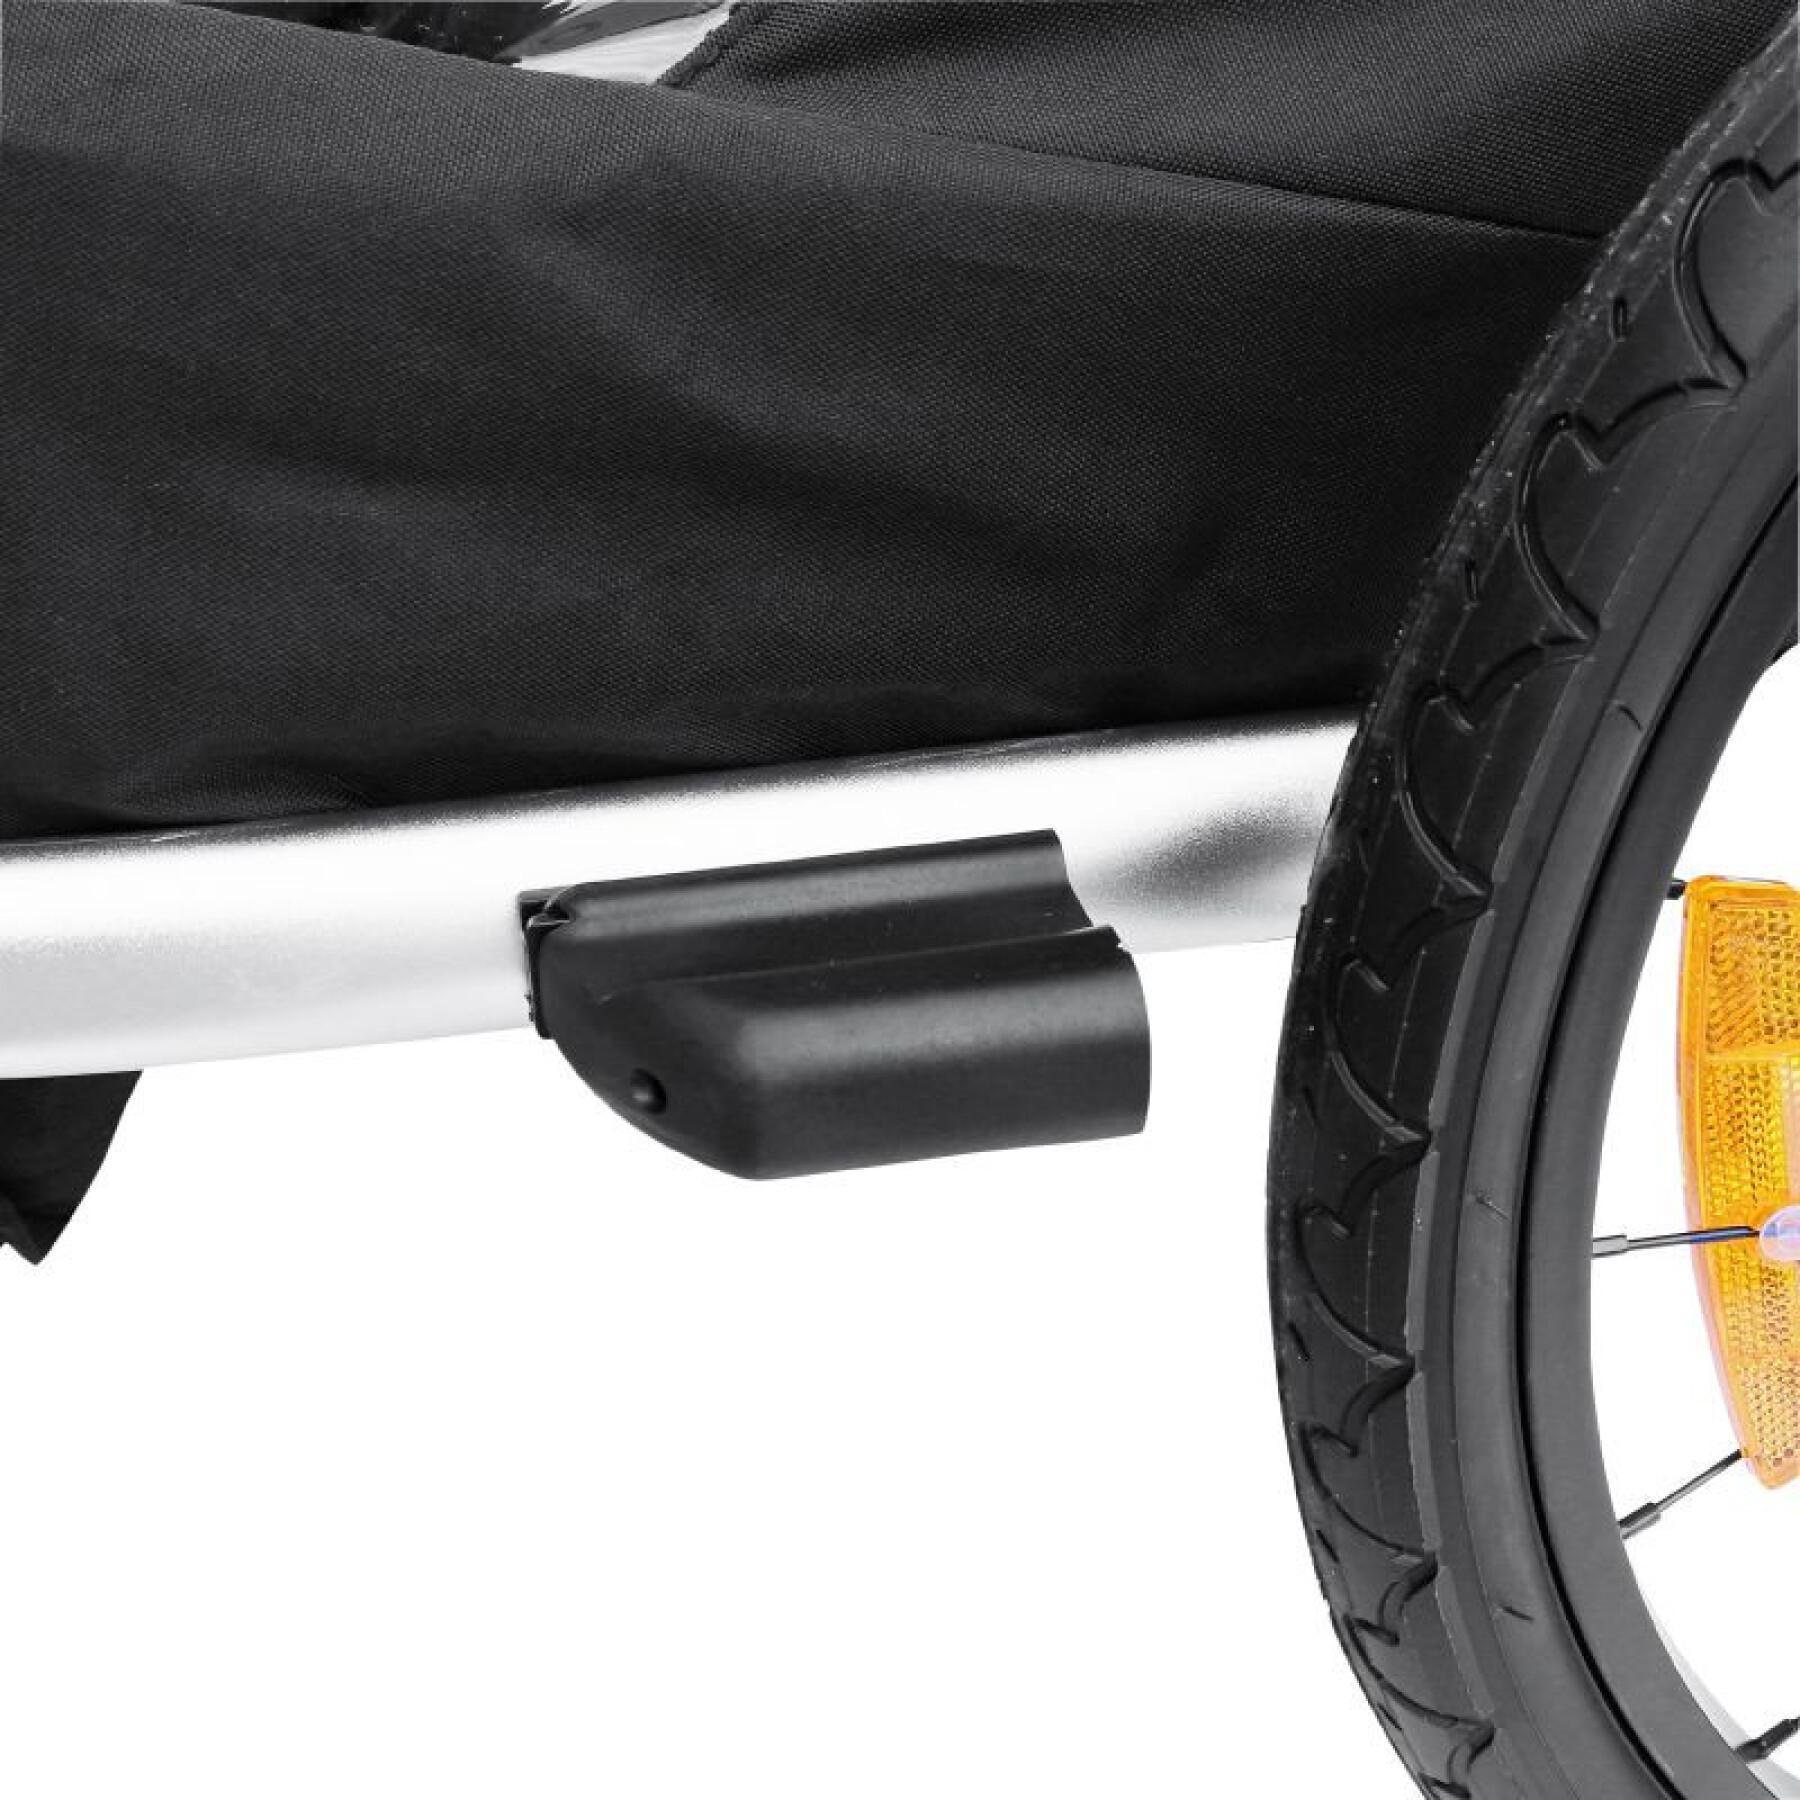 Fahrradanhänger überdachter Kinderwagen 2 Plätze in Alu maxi Befestigung Radachse - Buch mit Vorderrad und Griff Bremse - klappbar ohne Werkzeug Kind P2R 36 Kg